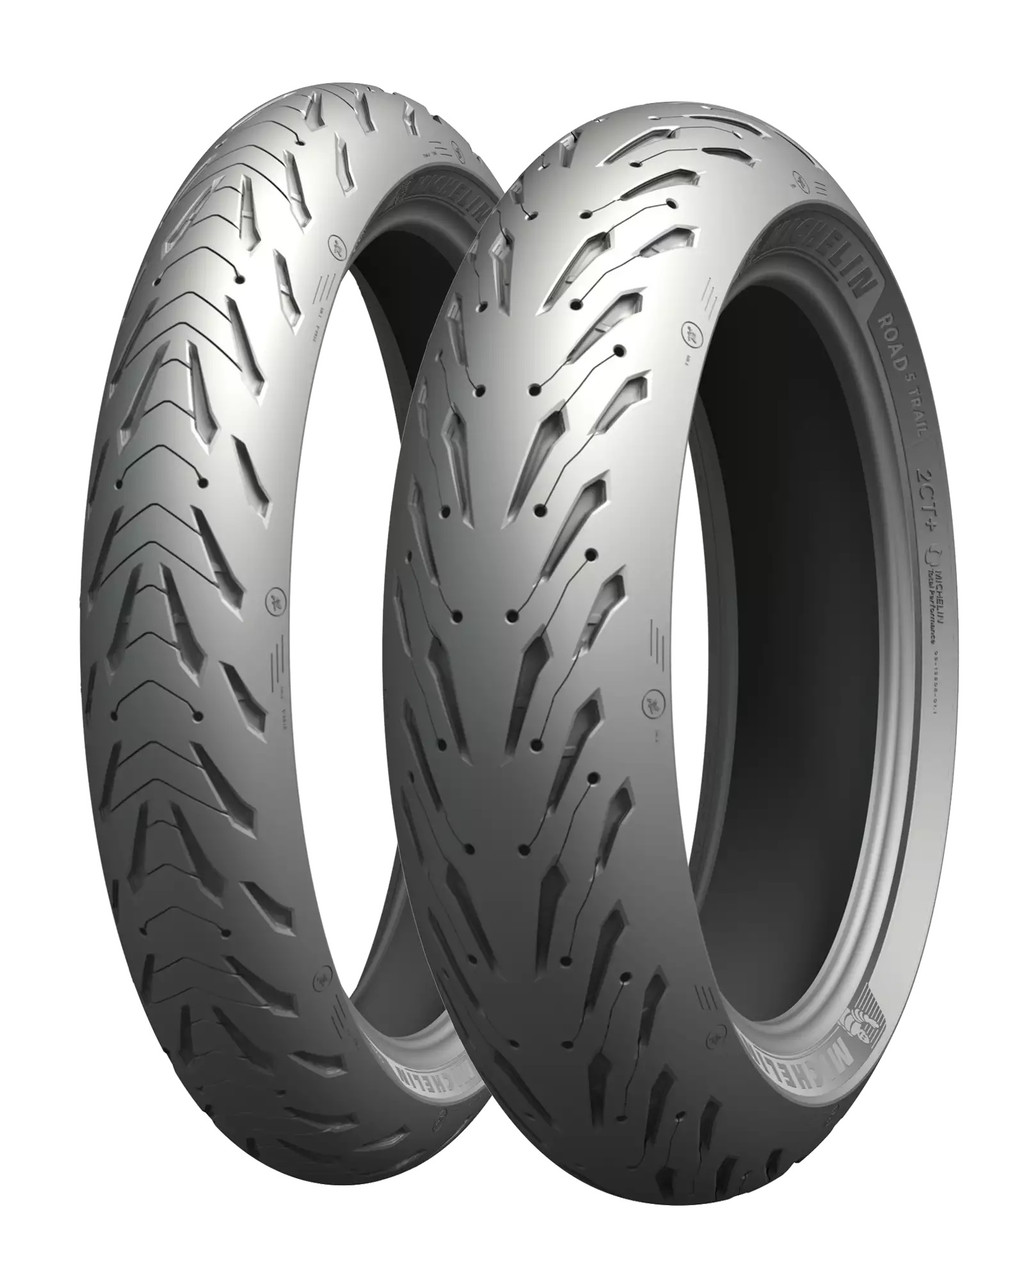 Michelin Road 5 Radial Tire Set - CBR600F4 CBR600RR VFR800 VTR1000F